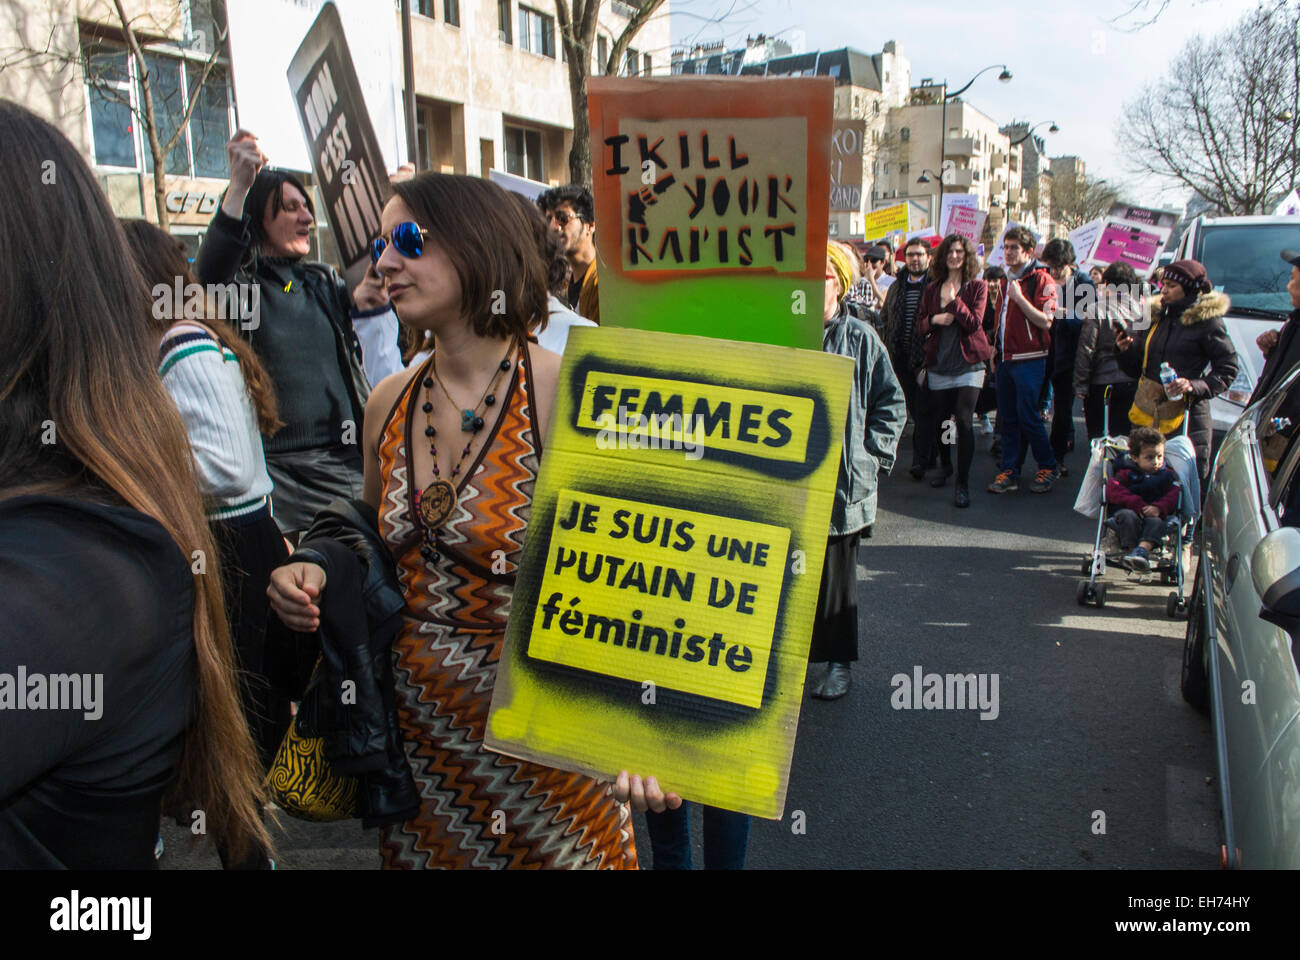 Paris, France. Le 8 mars, des groupes féministes français défilent dans la manifestation de la Journée internationale de la femme, des manifestations à Belleville, des femmes avec l'affiche de protestation de la militante française « Je tue votre rapiste », mouvement de marche des droits des femmes Banque D'Images